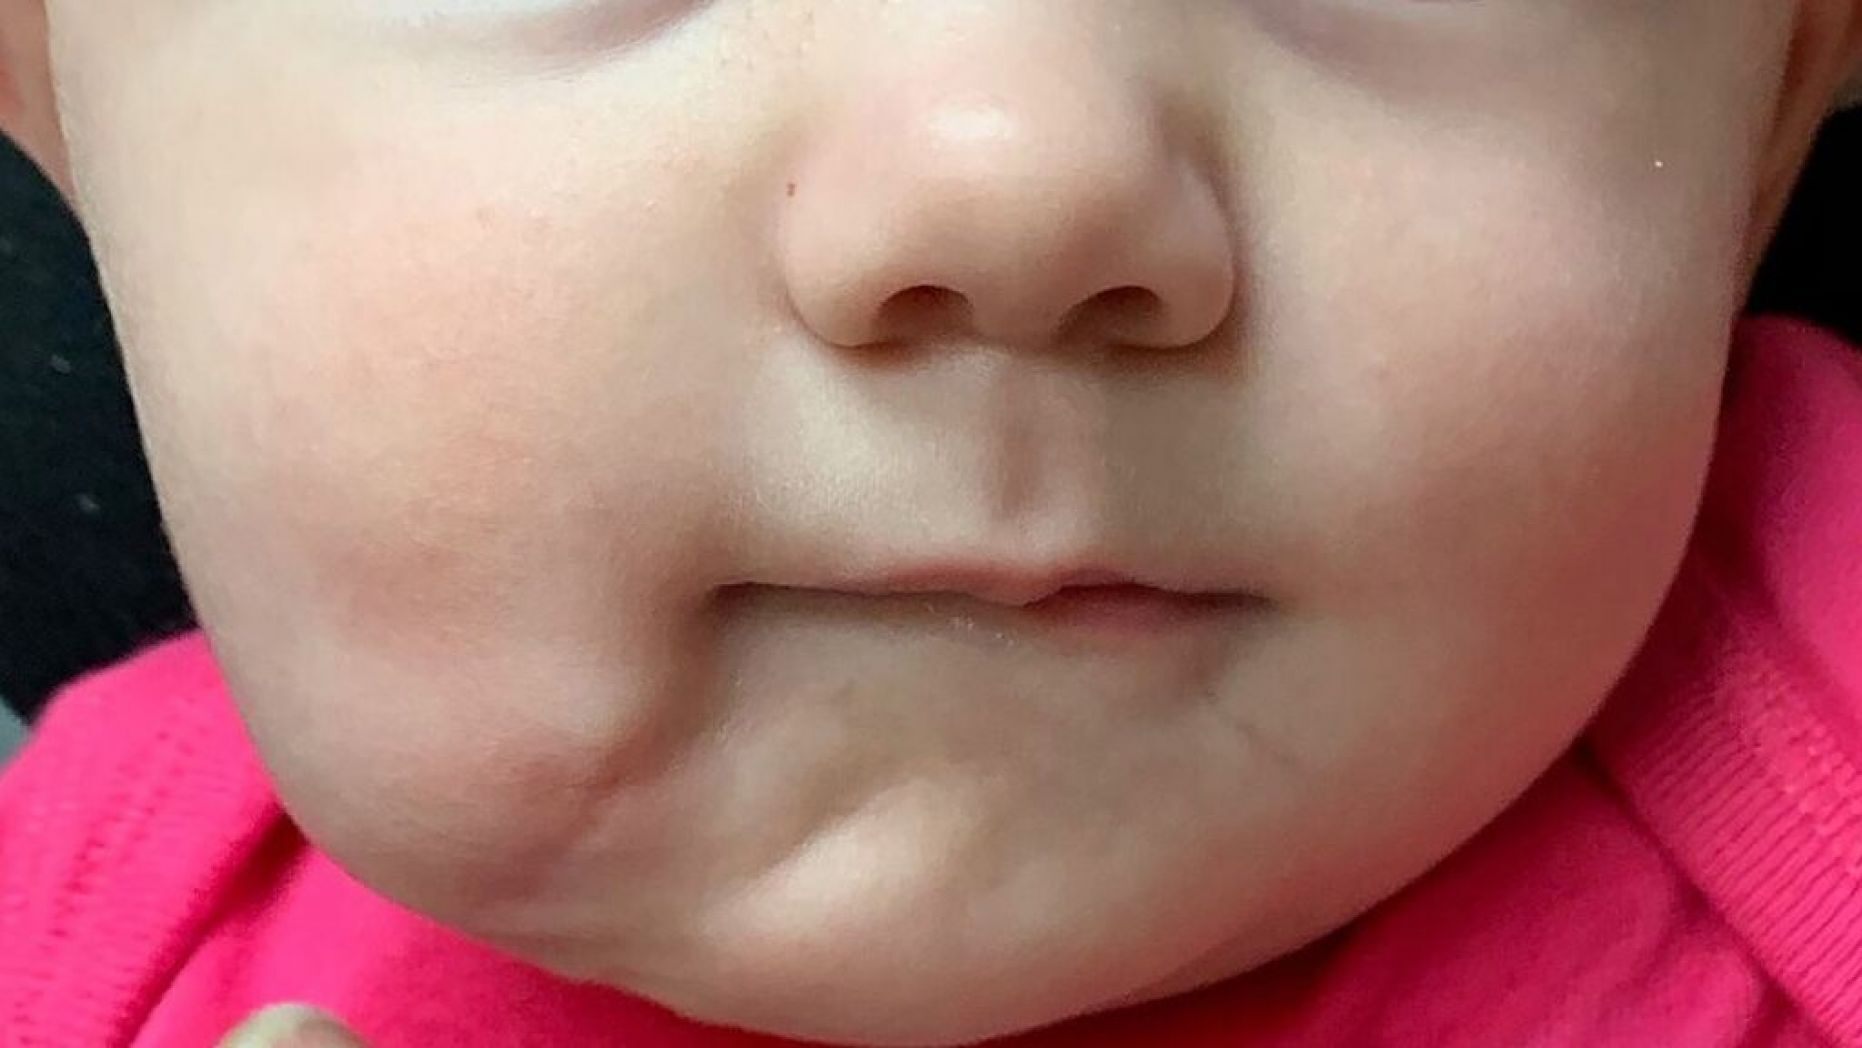   Các bác sĩ đã phẫu thuật loại bỏ cái miệng thừa khi bé được 6 tháng tuổi  